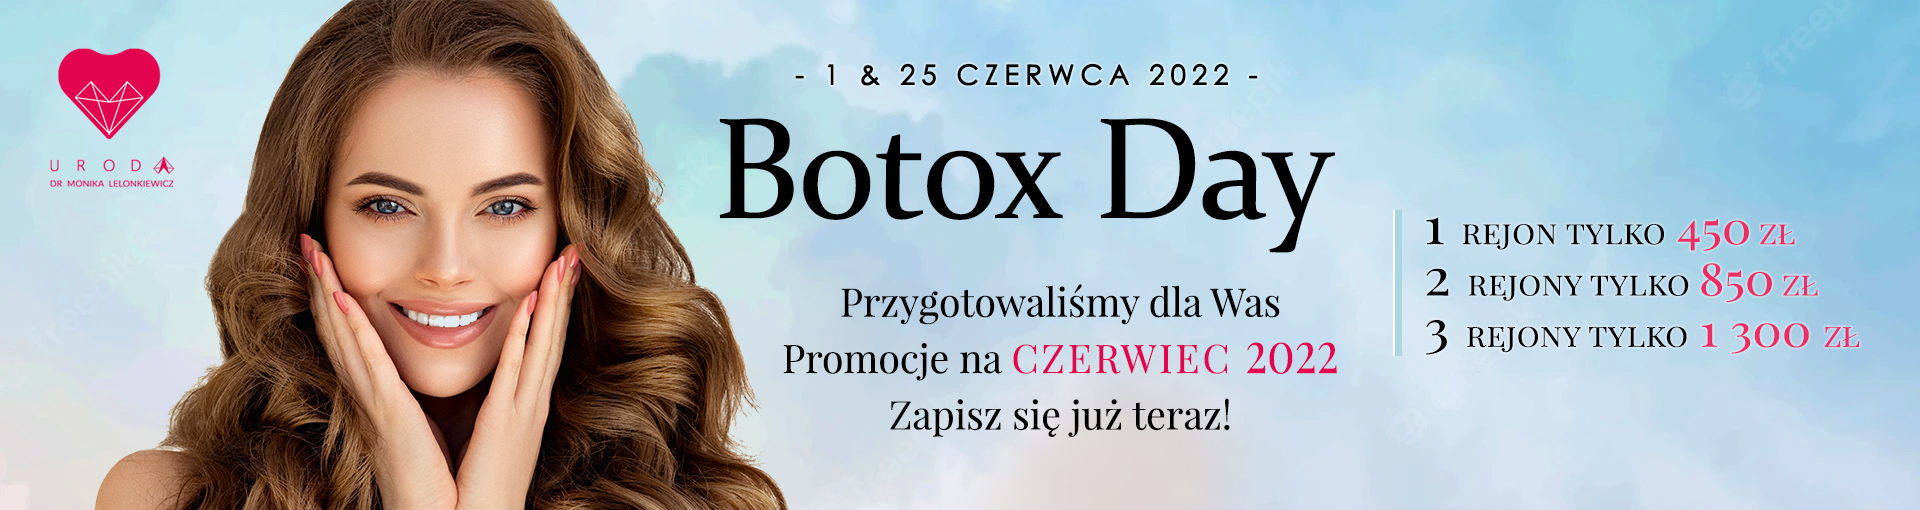 BotoxDay – 1 i 25 CZERWCA 2022